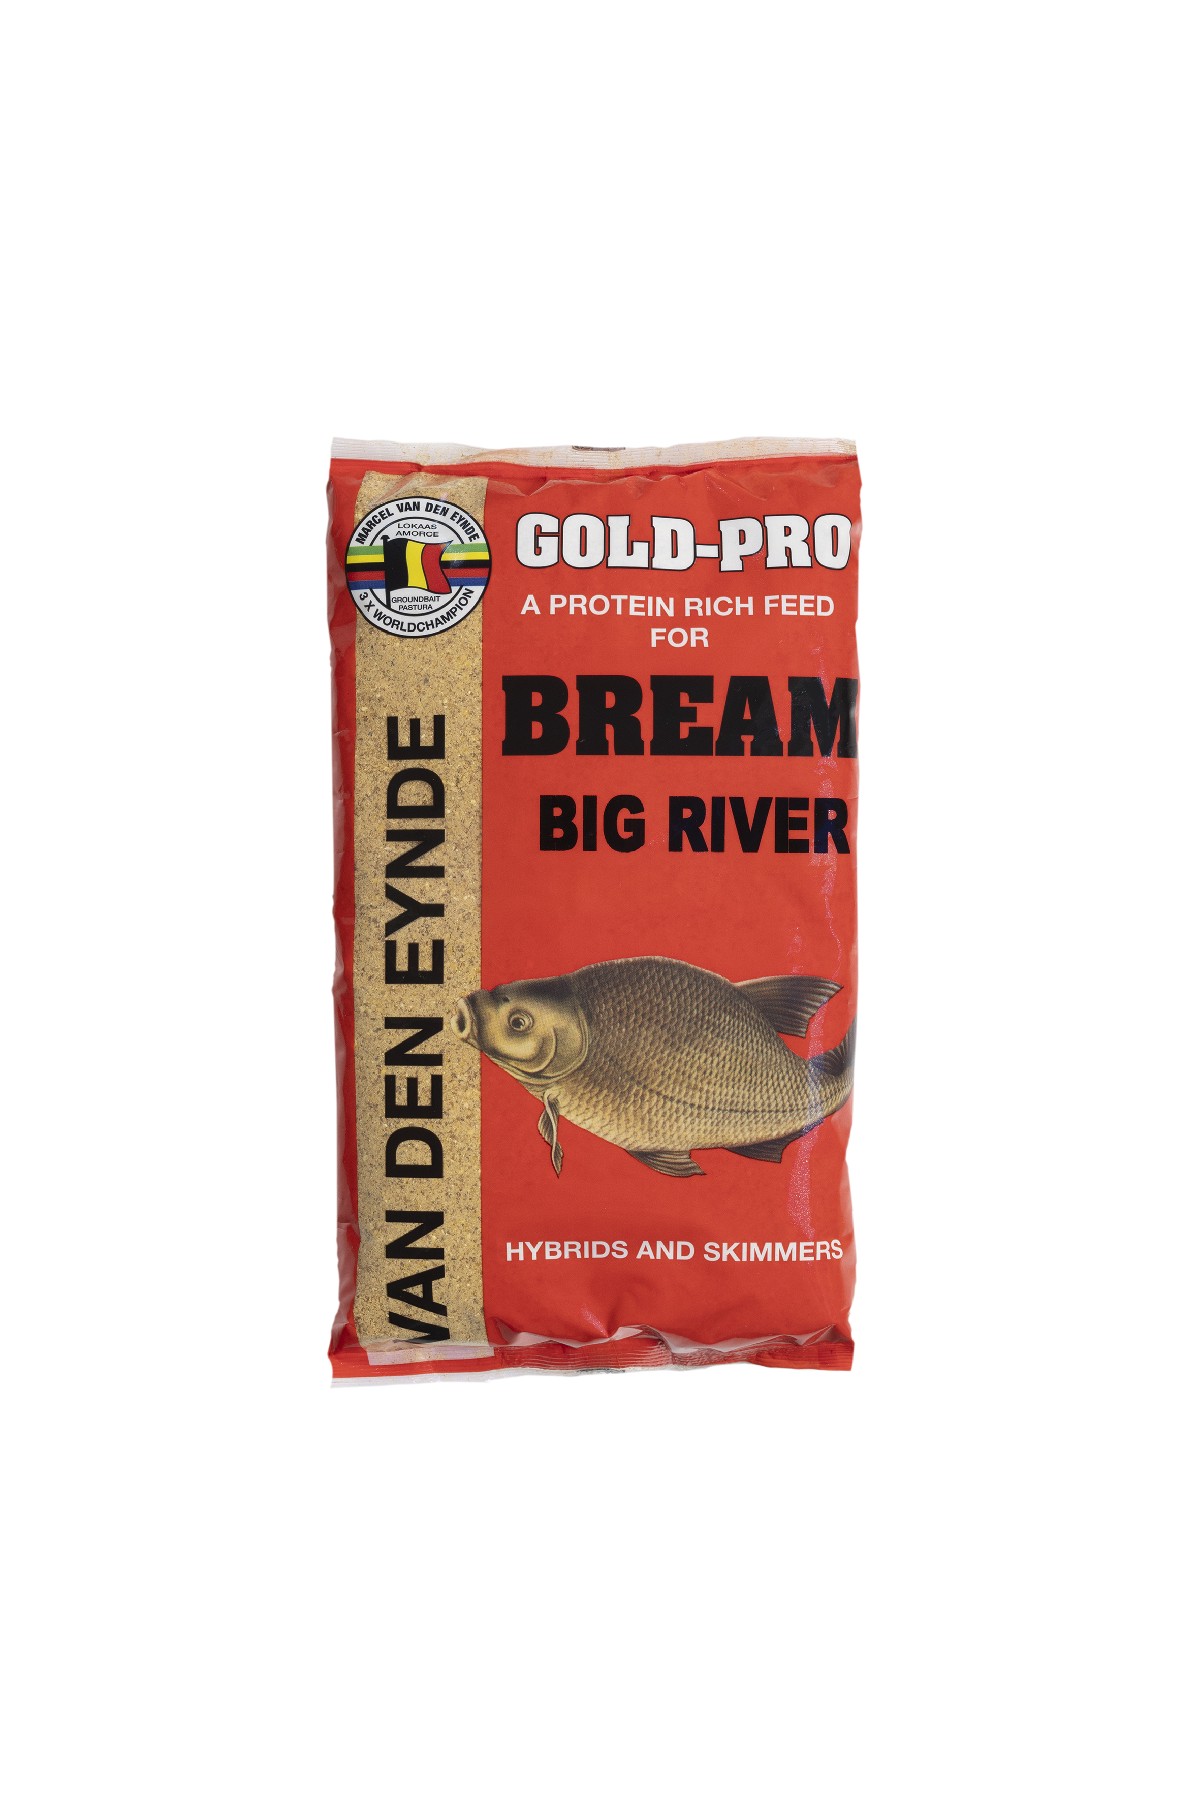 Stapelkorting vd Eynde Gold-Pro Big River 12x1 kg